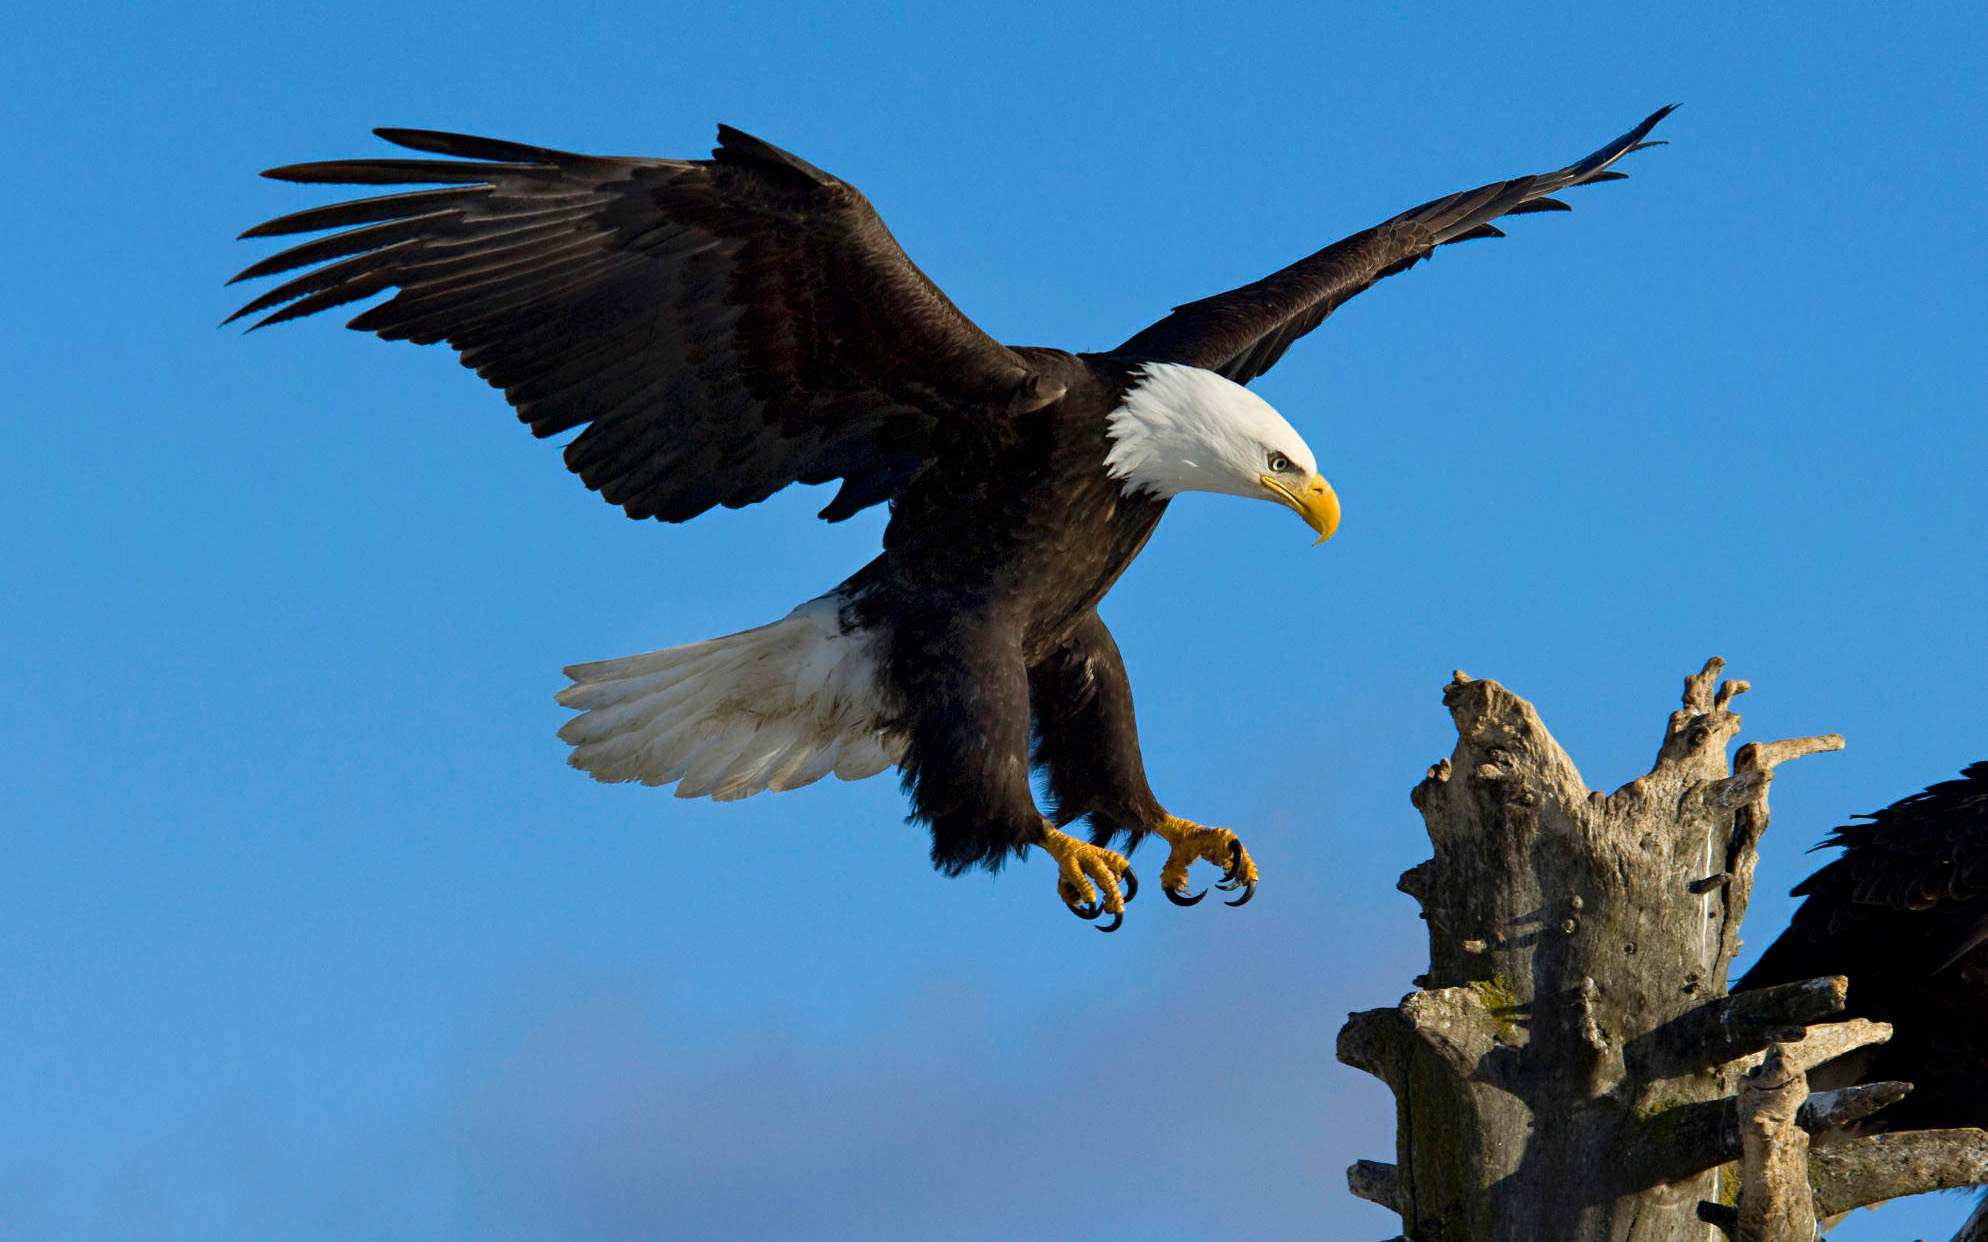 Mobile Desktop Background Hd Image Of Flying Eagle